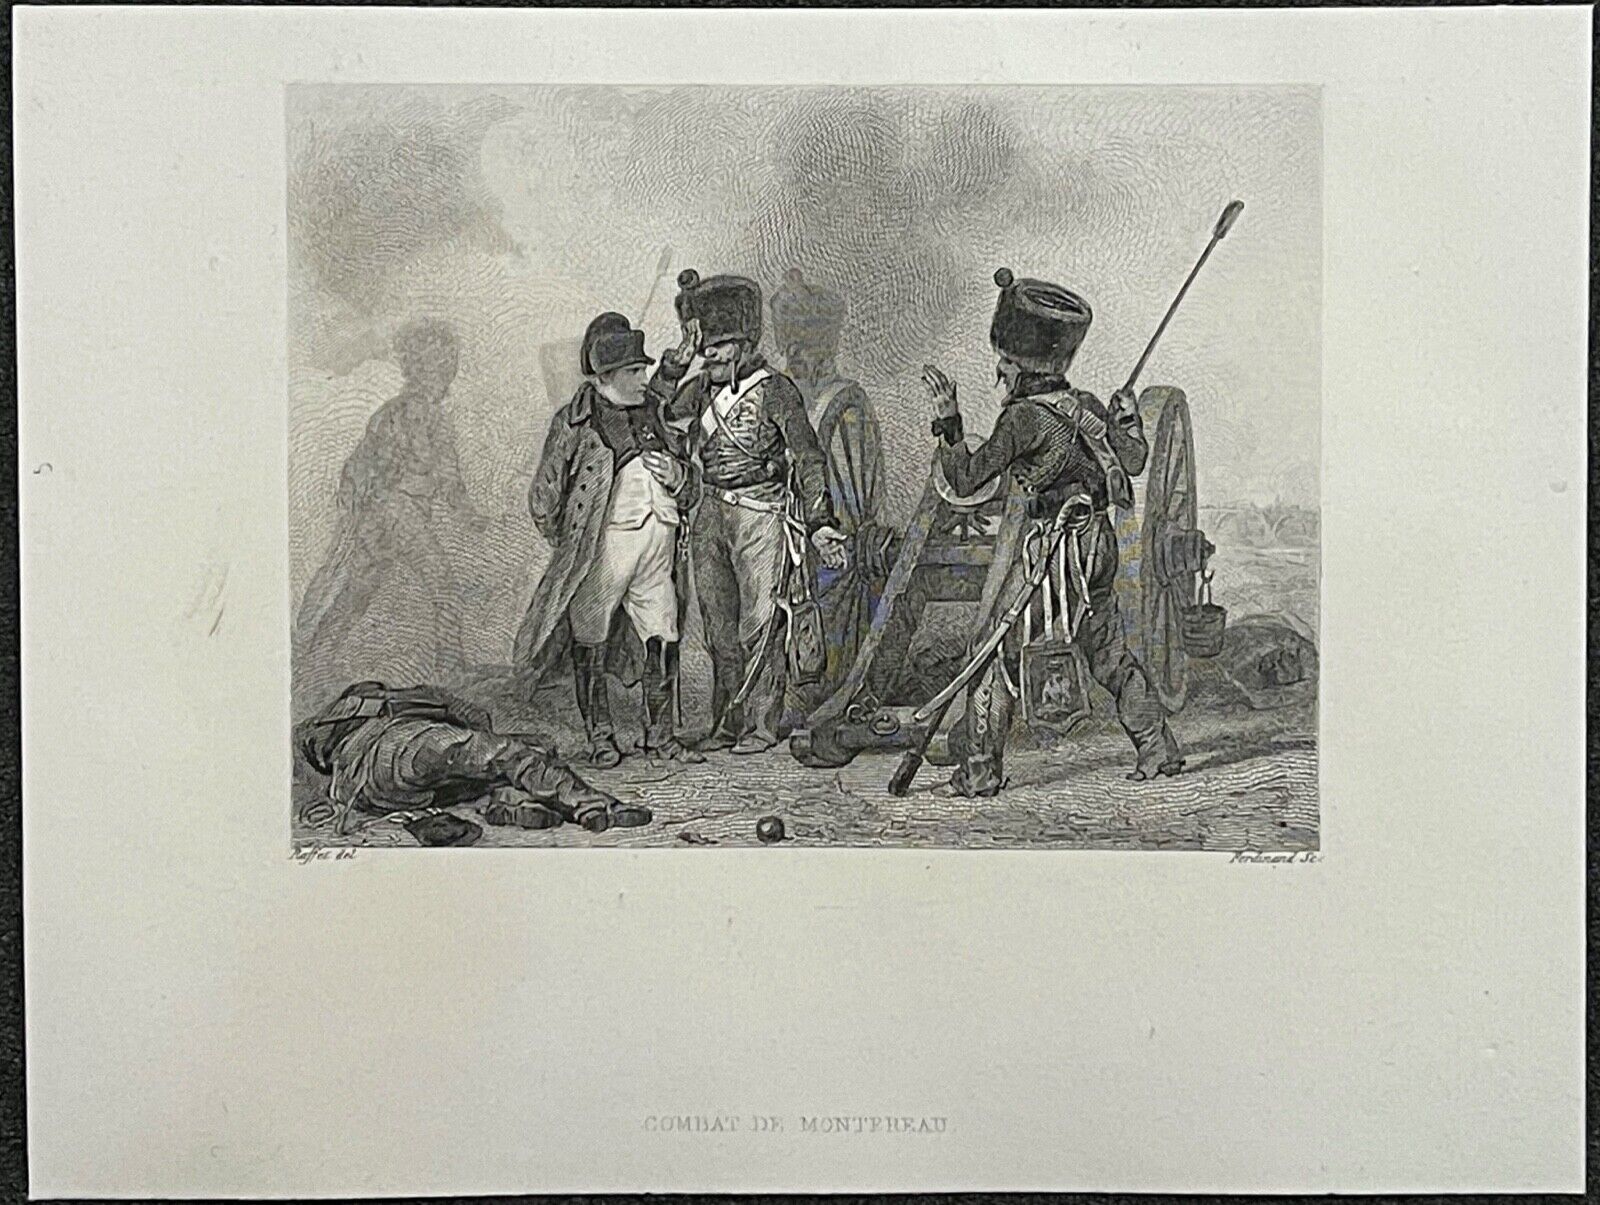 19 FÉVRIER 1814 - NAPOLÉON ET LES SHAKOS AUTRICHIENS DE MONTEREAU